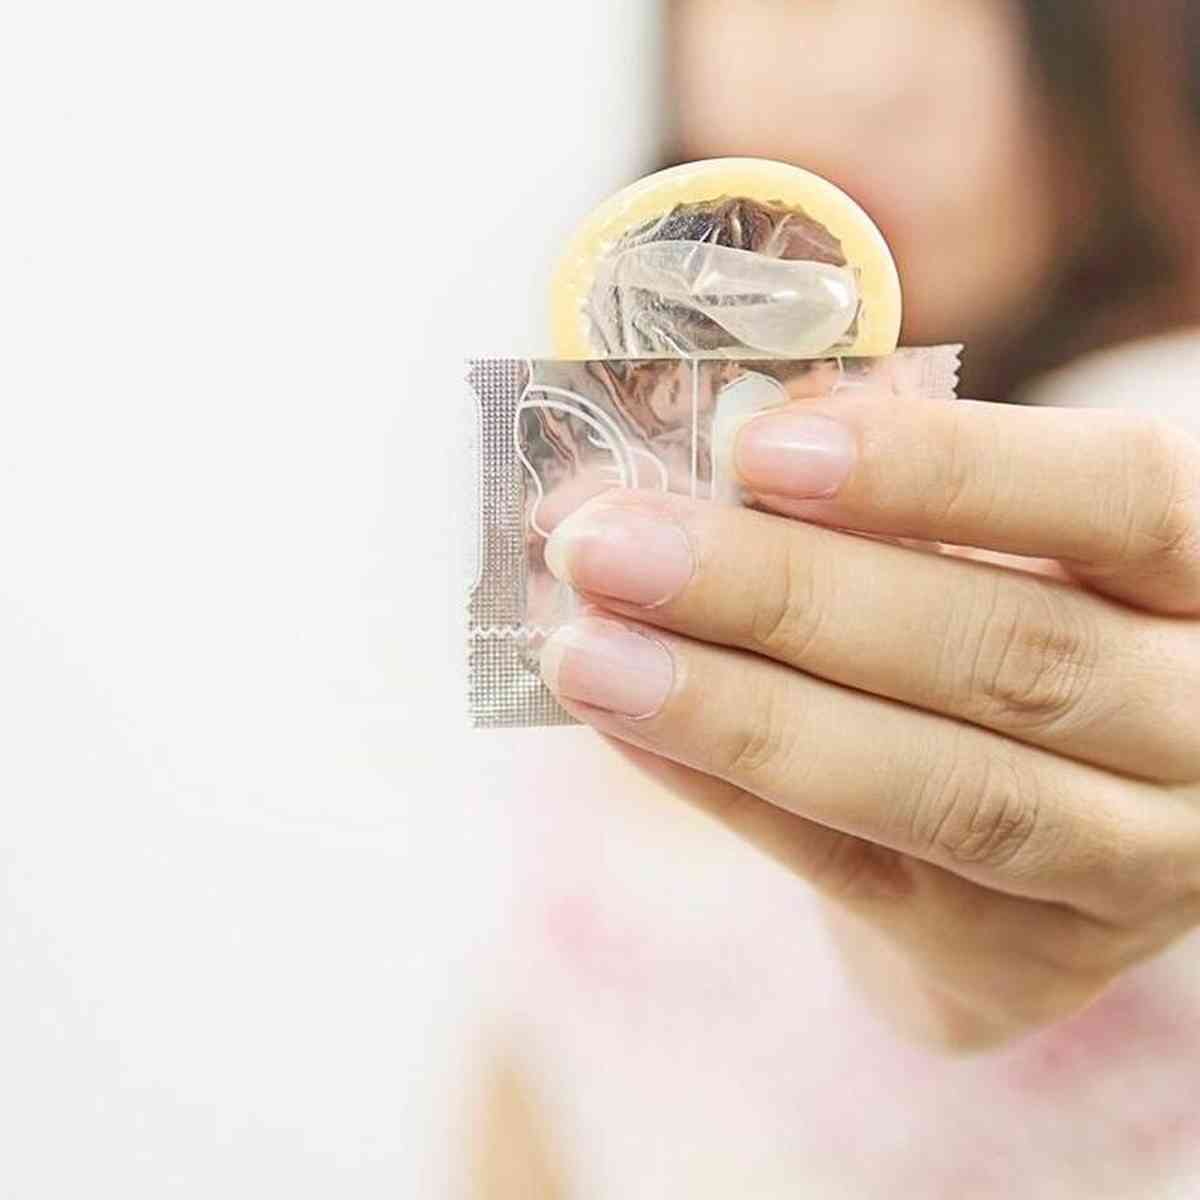 Adolescentes usam menos preservativos nas relaes, segundo IBGE - Sade -  Estado de Minas